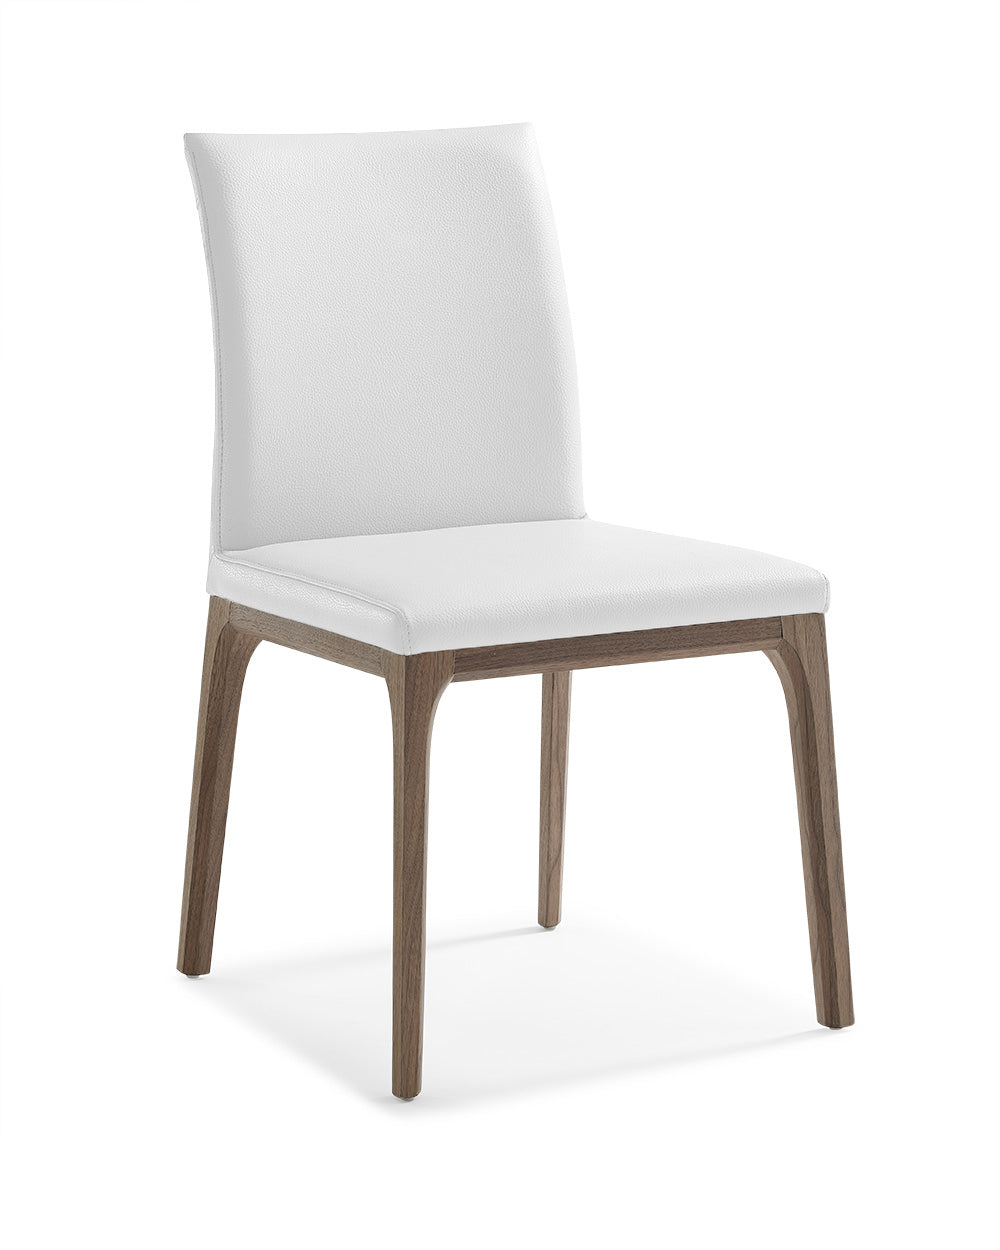 Stella Dining Chair Walnut/White - Set of 2 by Whiteline